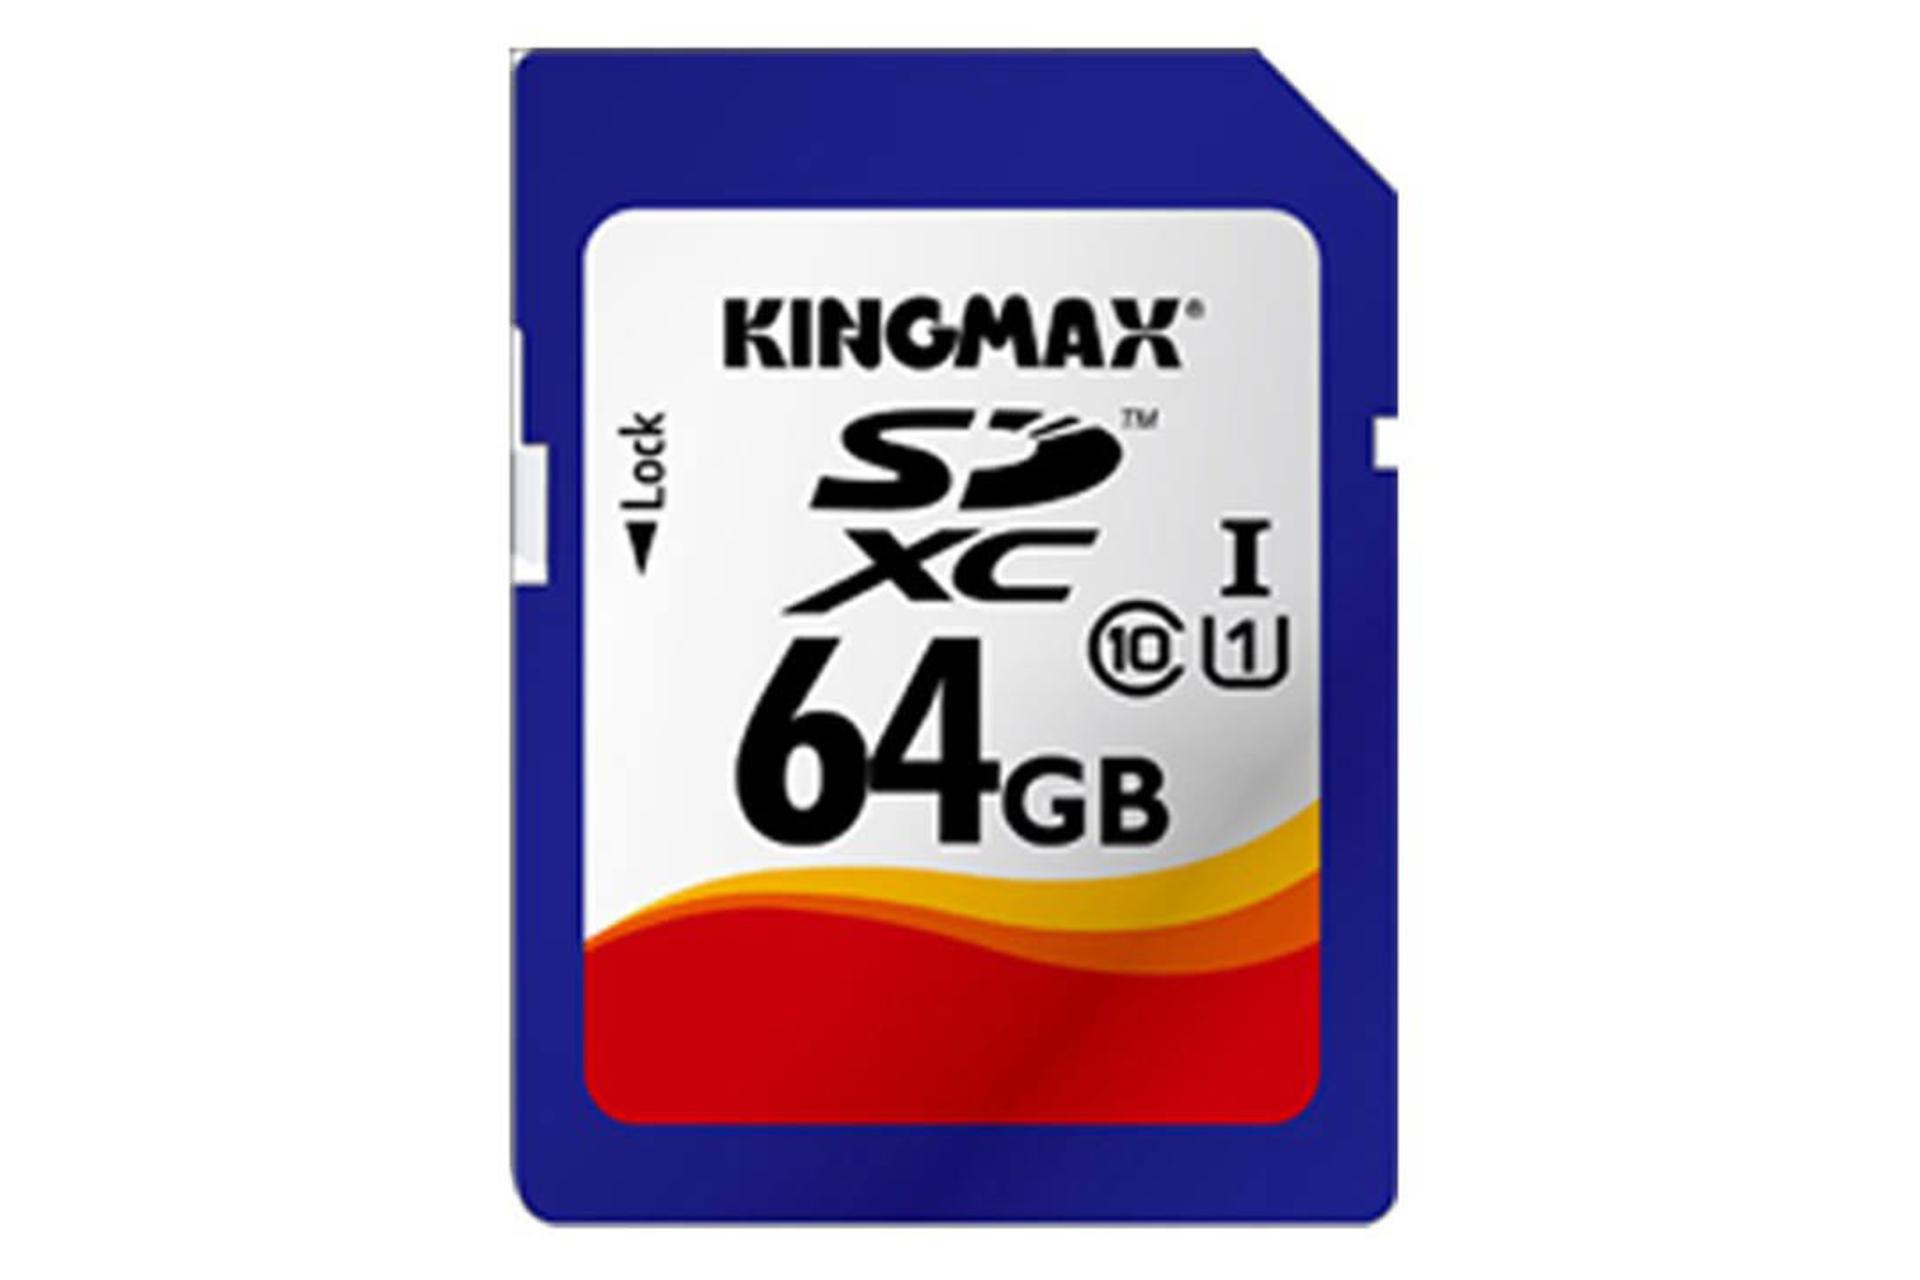 Kingmax Professional Grade SDXC Class 10 UHS-I U1 64GB